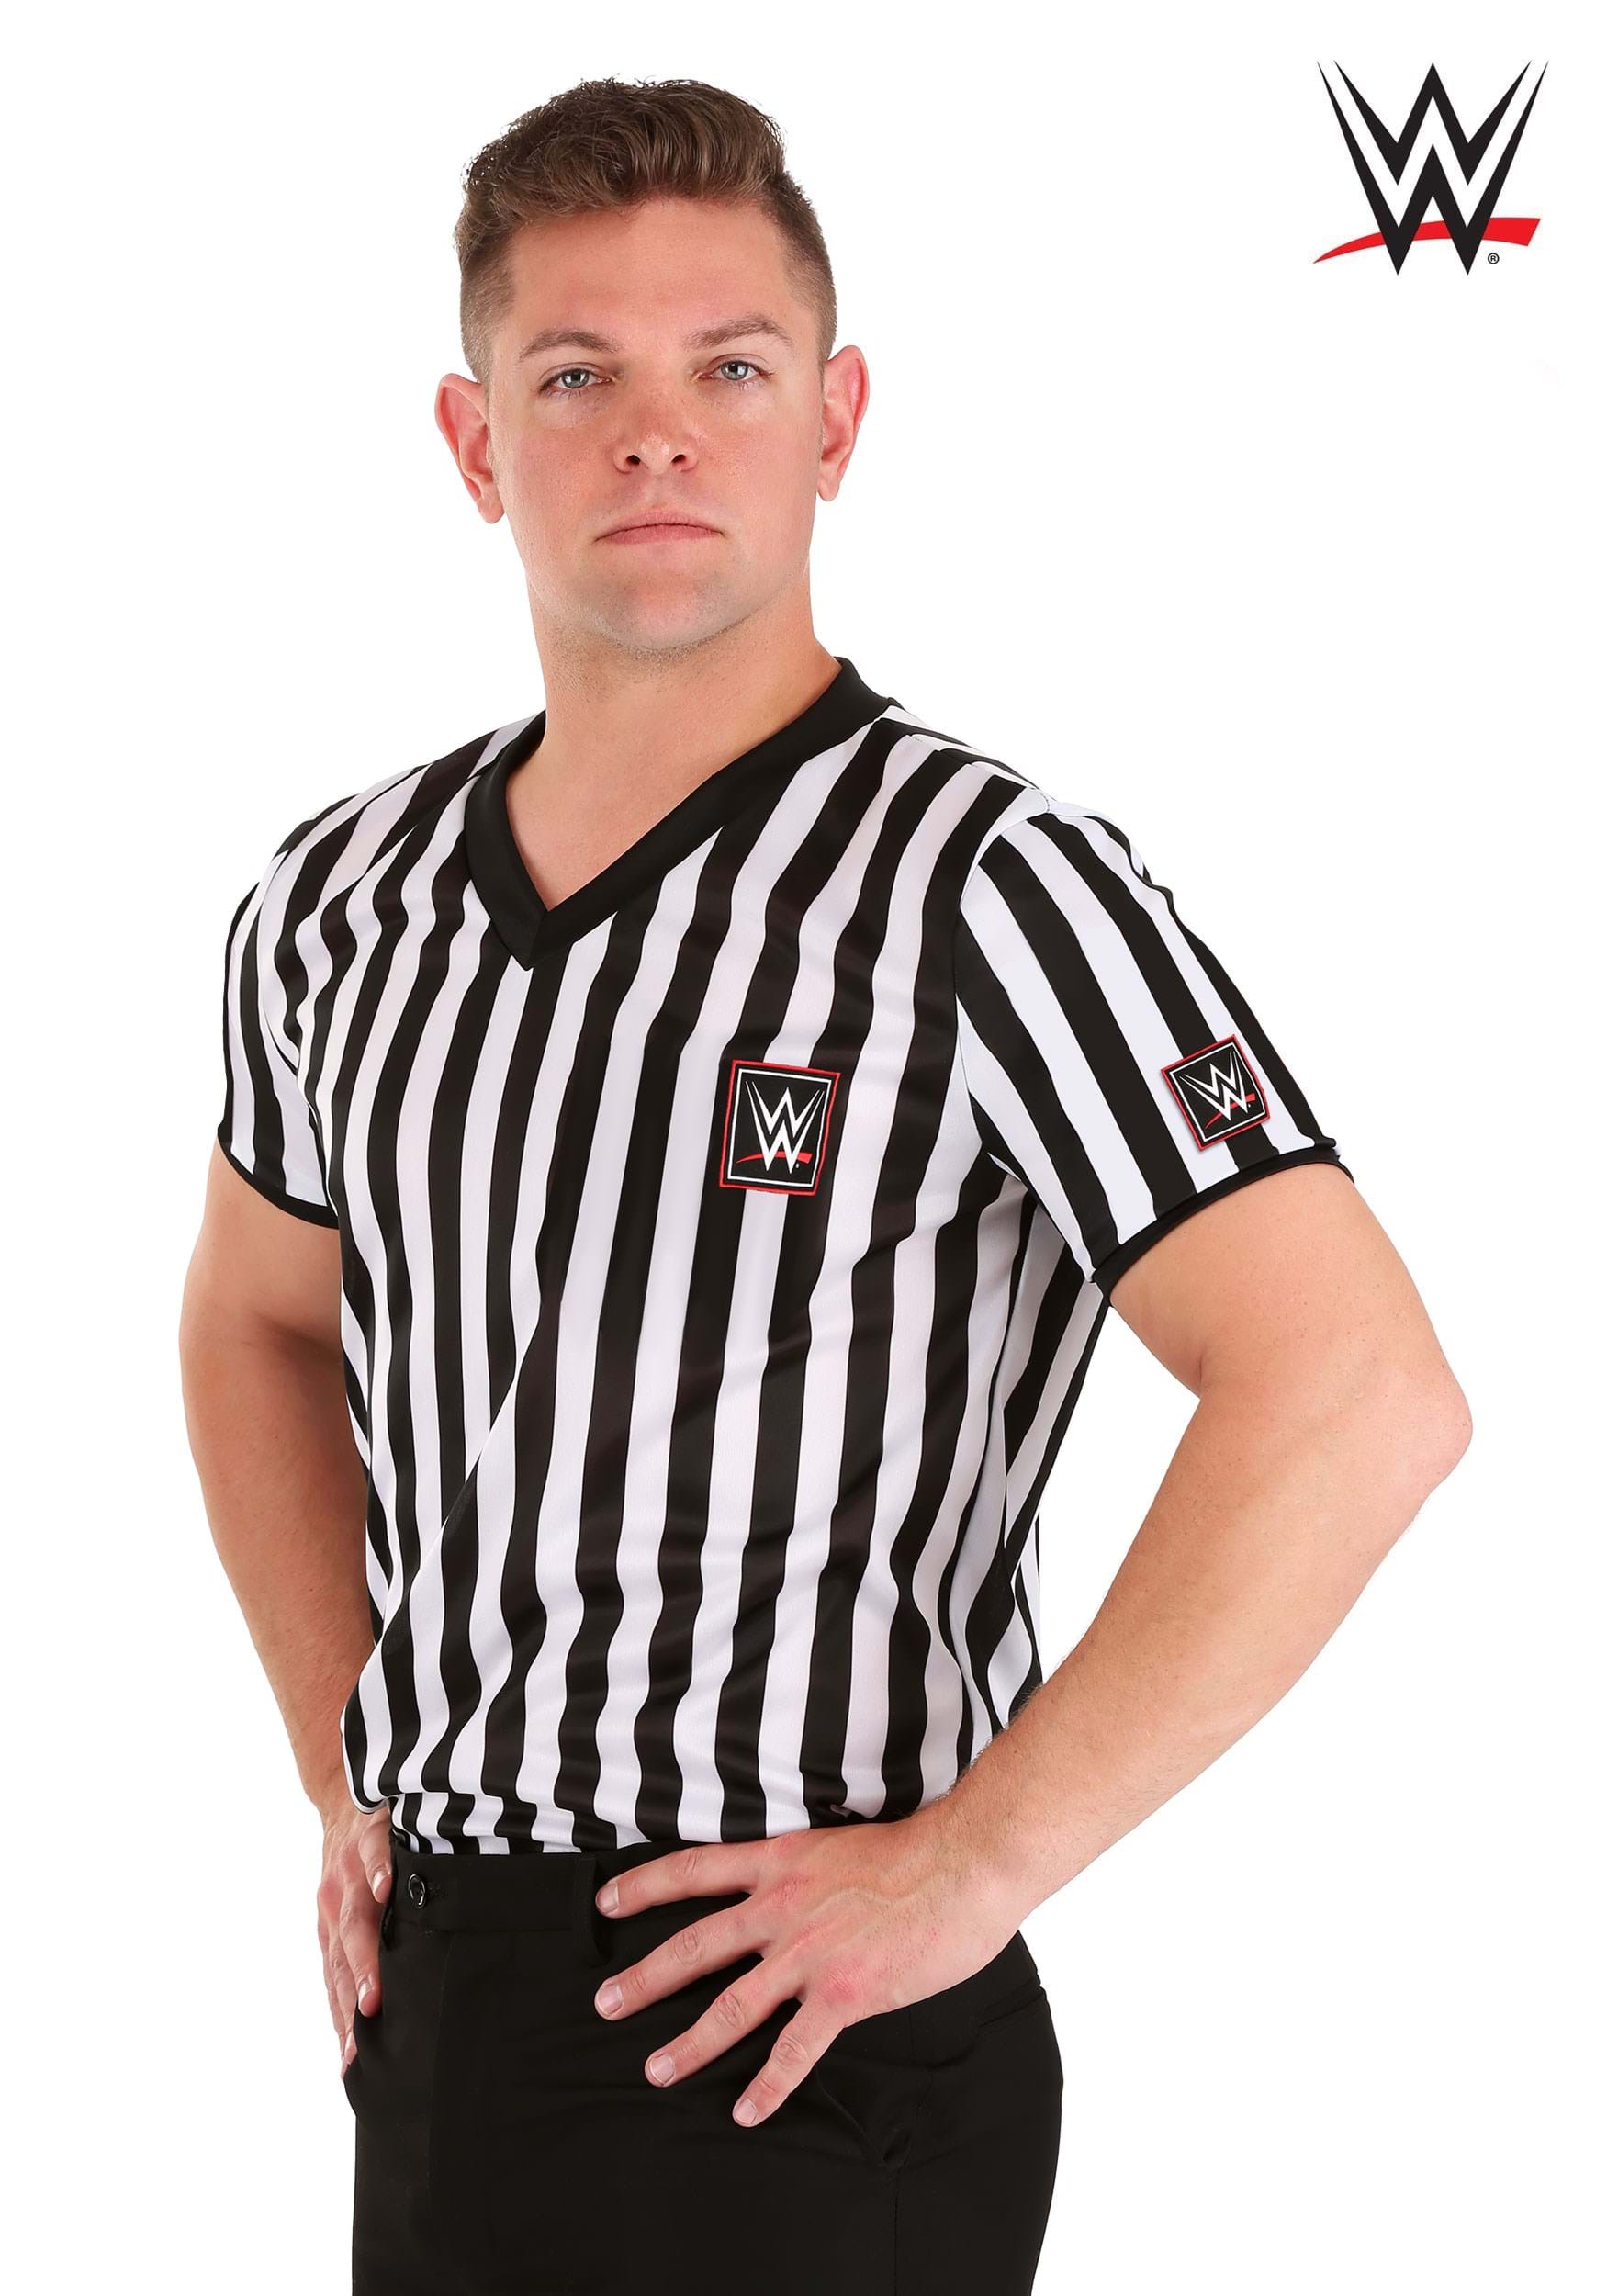 Abogado de la camisa de la WWE Multicolor